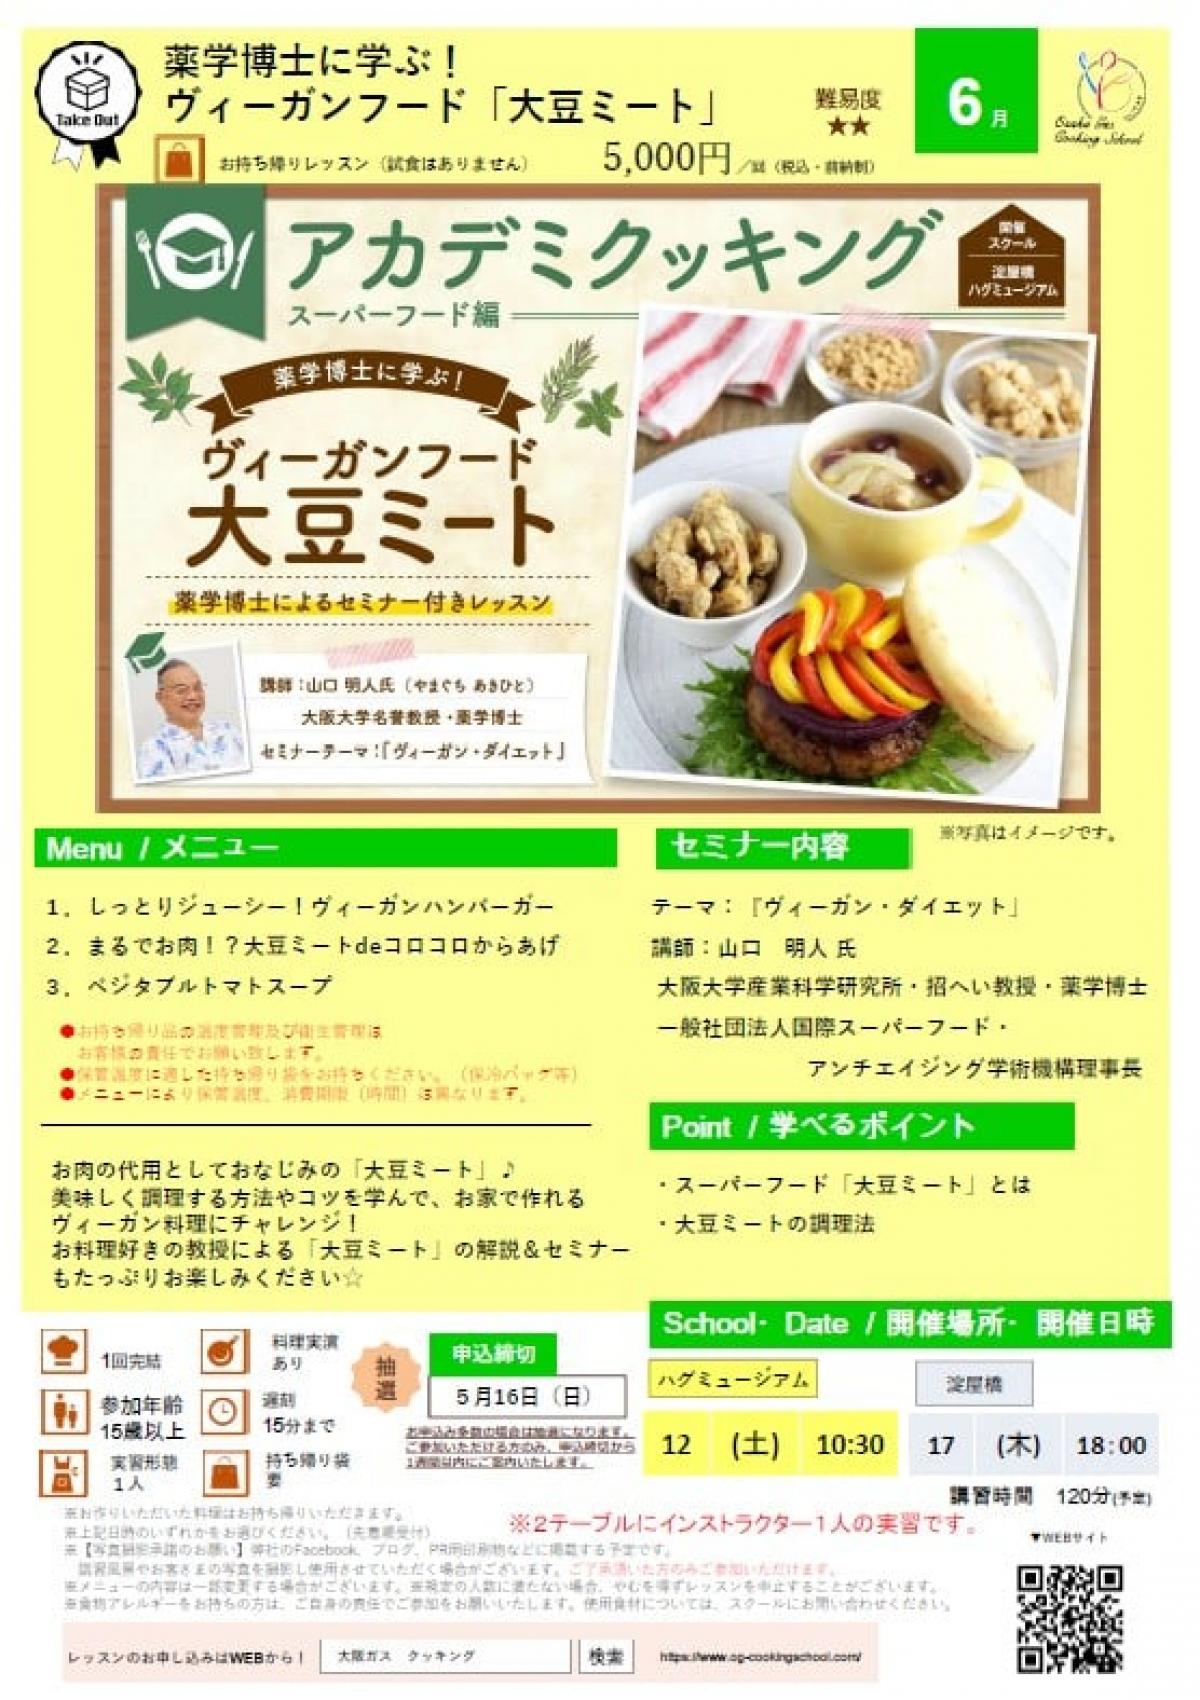 食の資格“栄養コンシェルジュ”が導入された大阪ガス クッキングスクールがアカデミクッキング ～大豆ミート～を開催します【栄養コンシェルジュ取得後のご活躍】